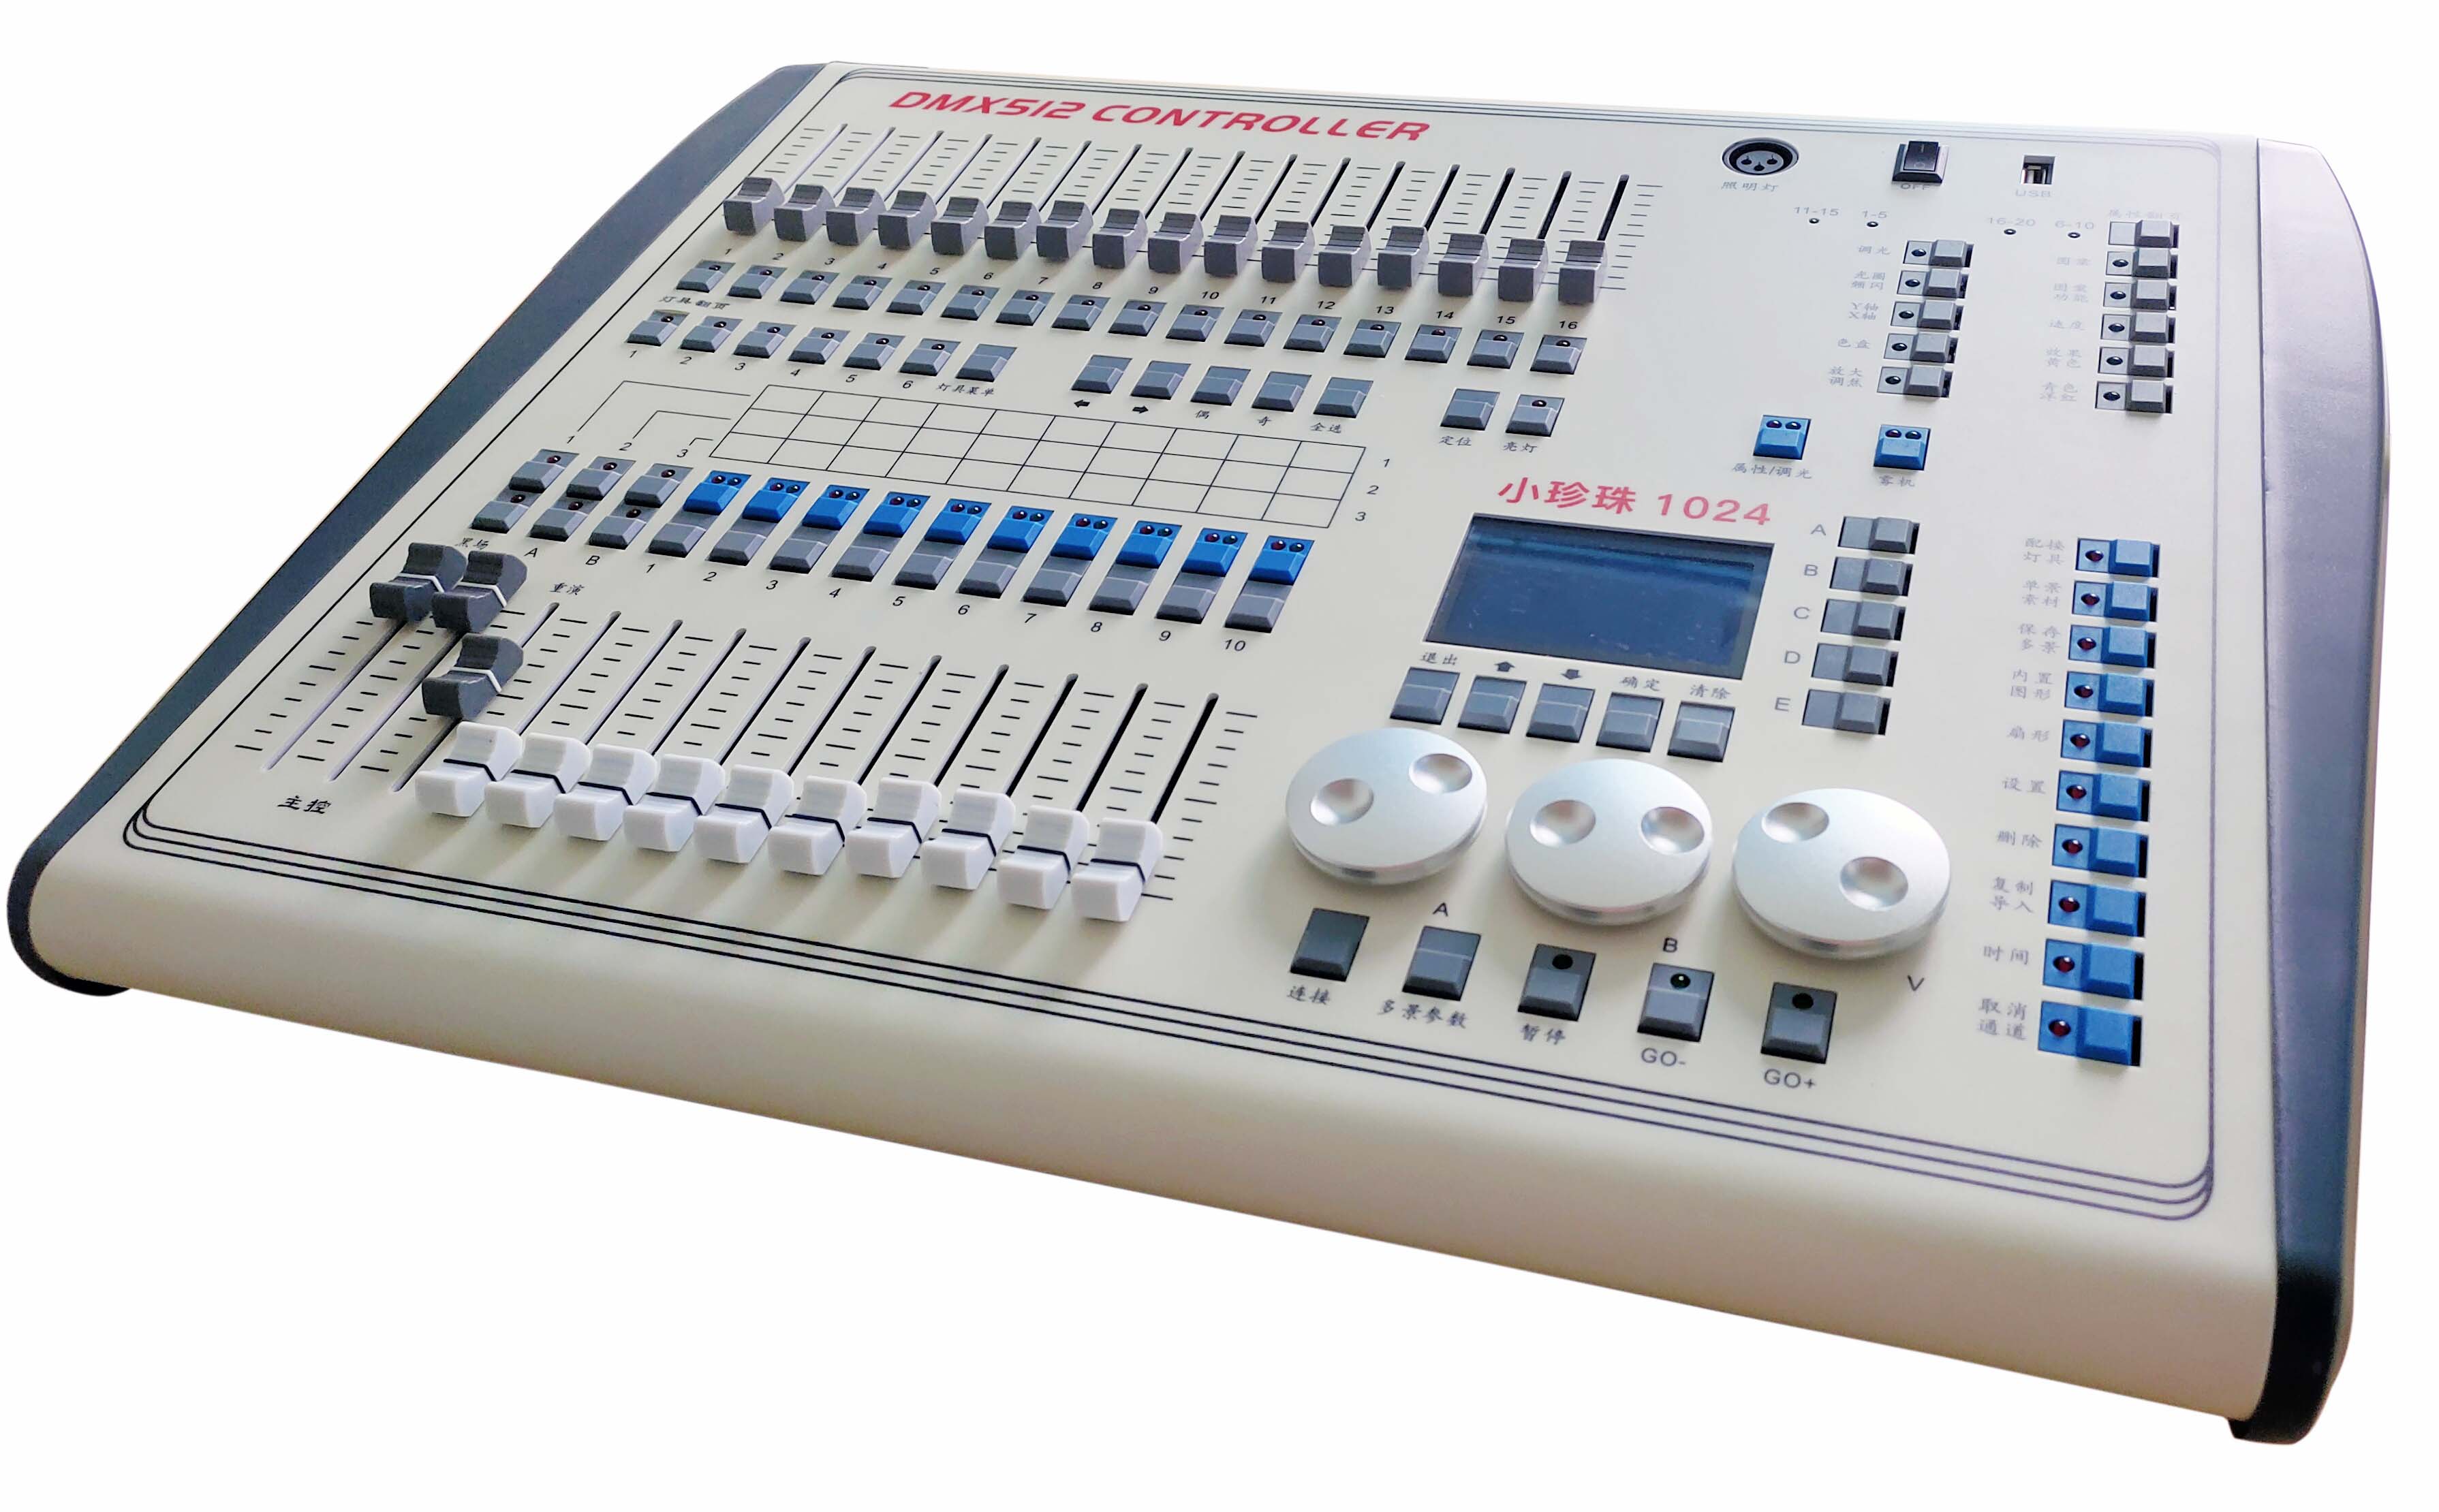  Controlador de canales DMX-512 Pearl 1024 FD-KA1024